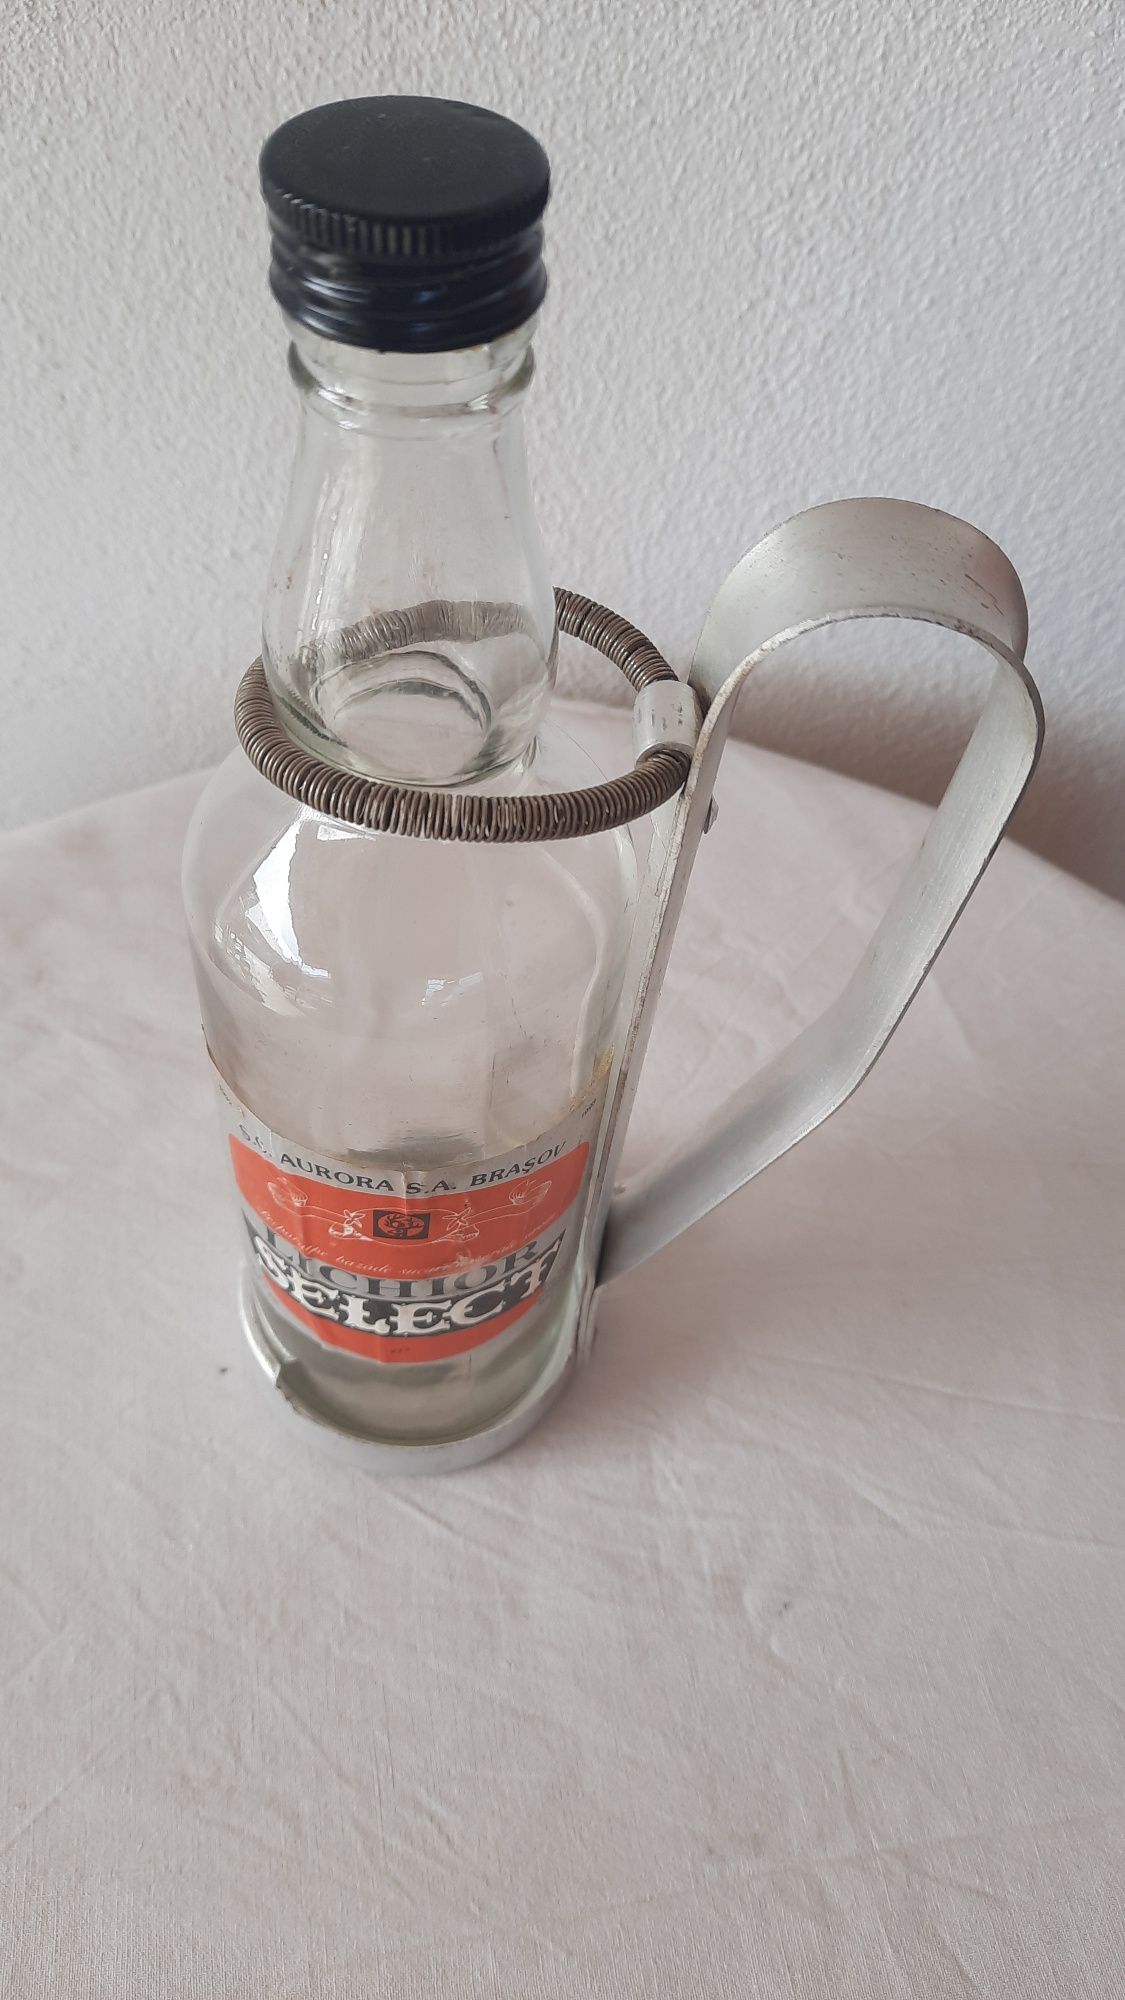 Sticla de Lichior "SELECT" din 1992 cu suport din aluminu pentru col